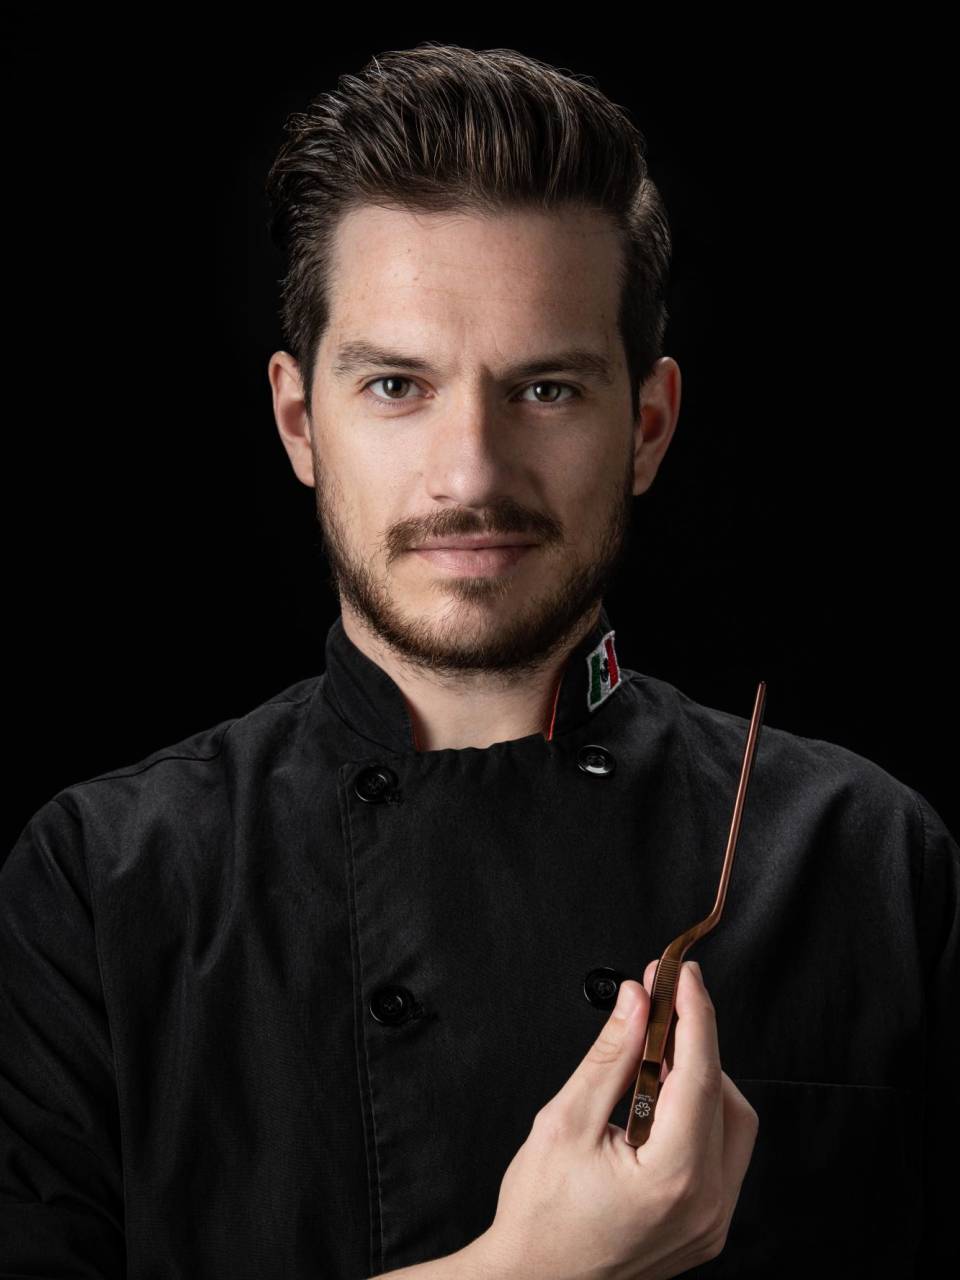 El chef mexicano Gustavo Fernández es el expositor internacional invitado este año.